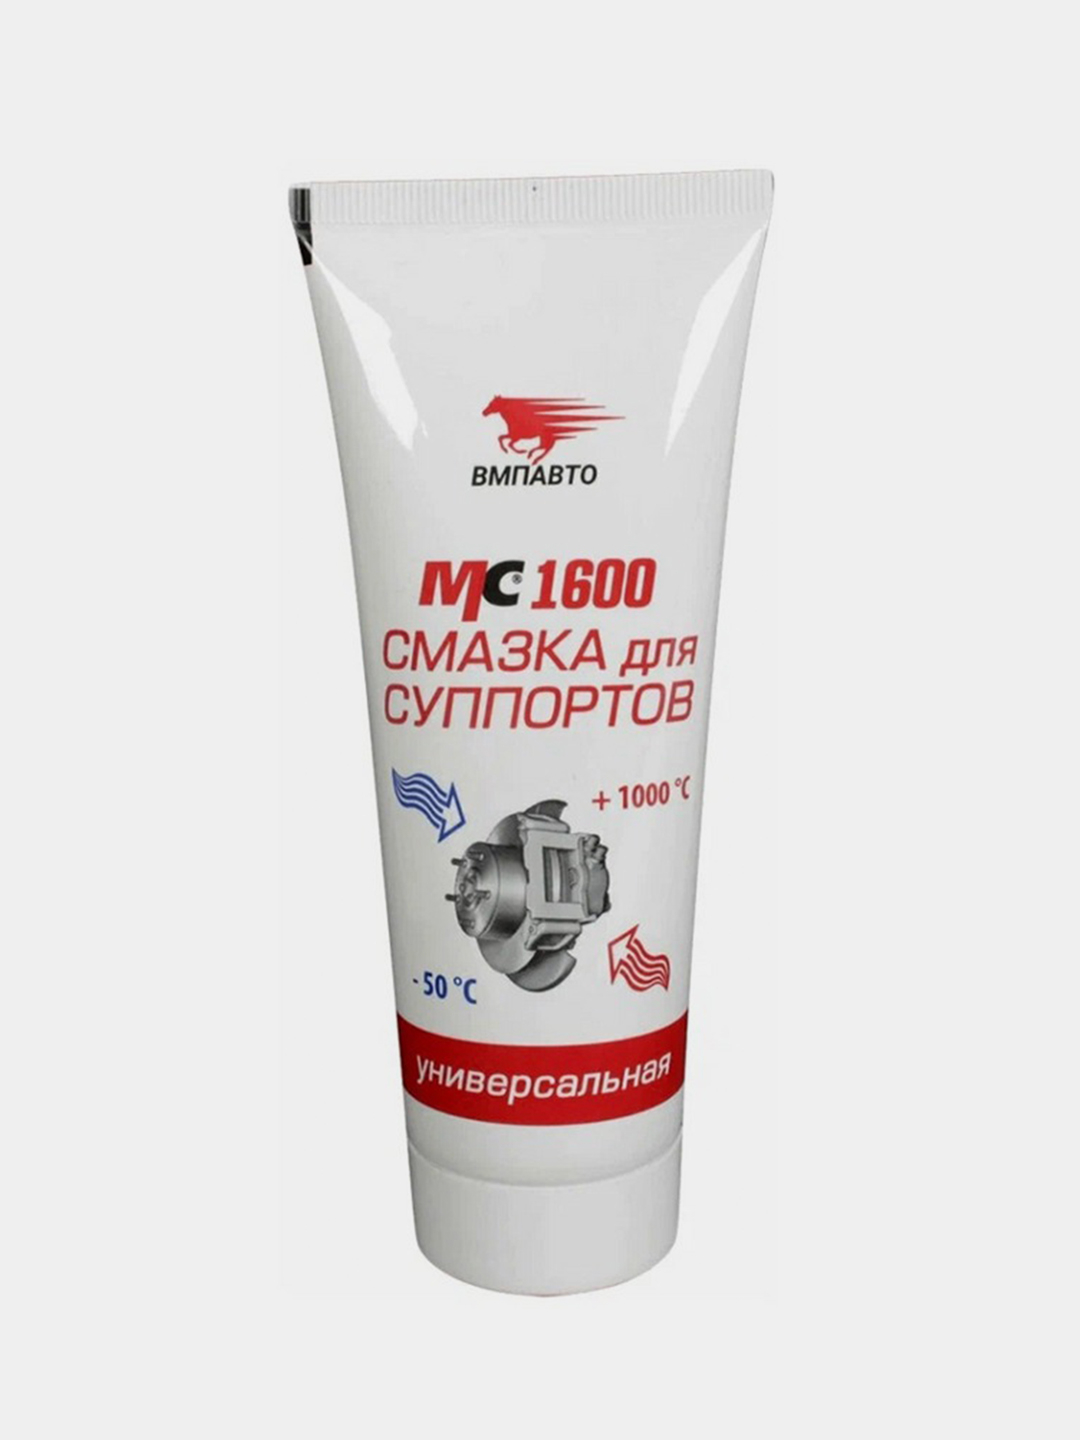 Смазка для суппортов высокотемпературная МС 1600 ВМПАВТО  по цене .